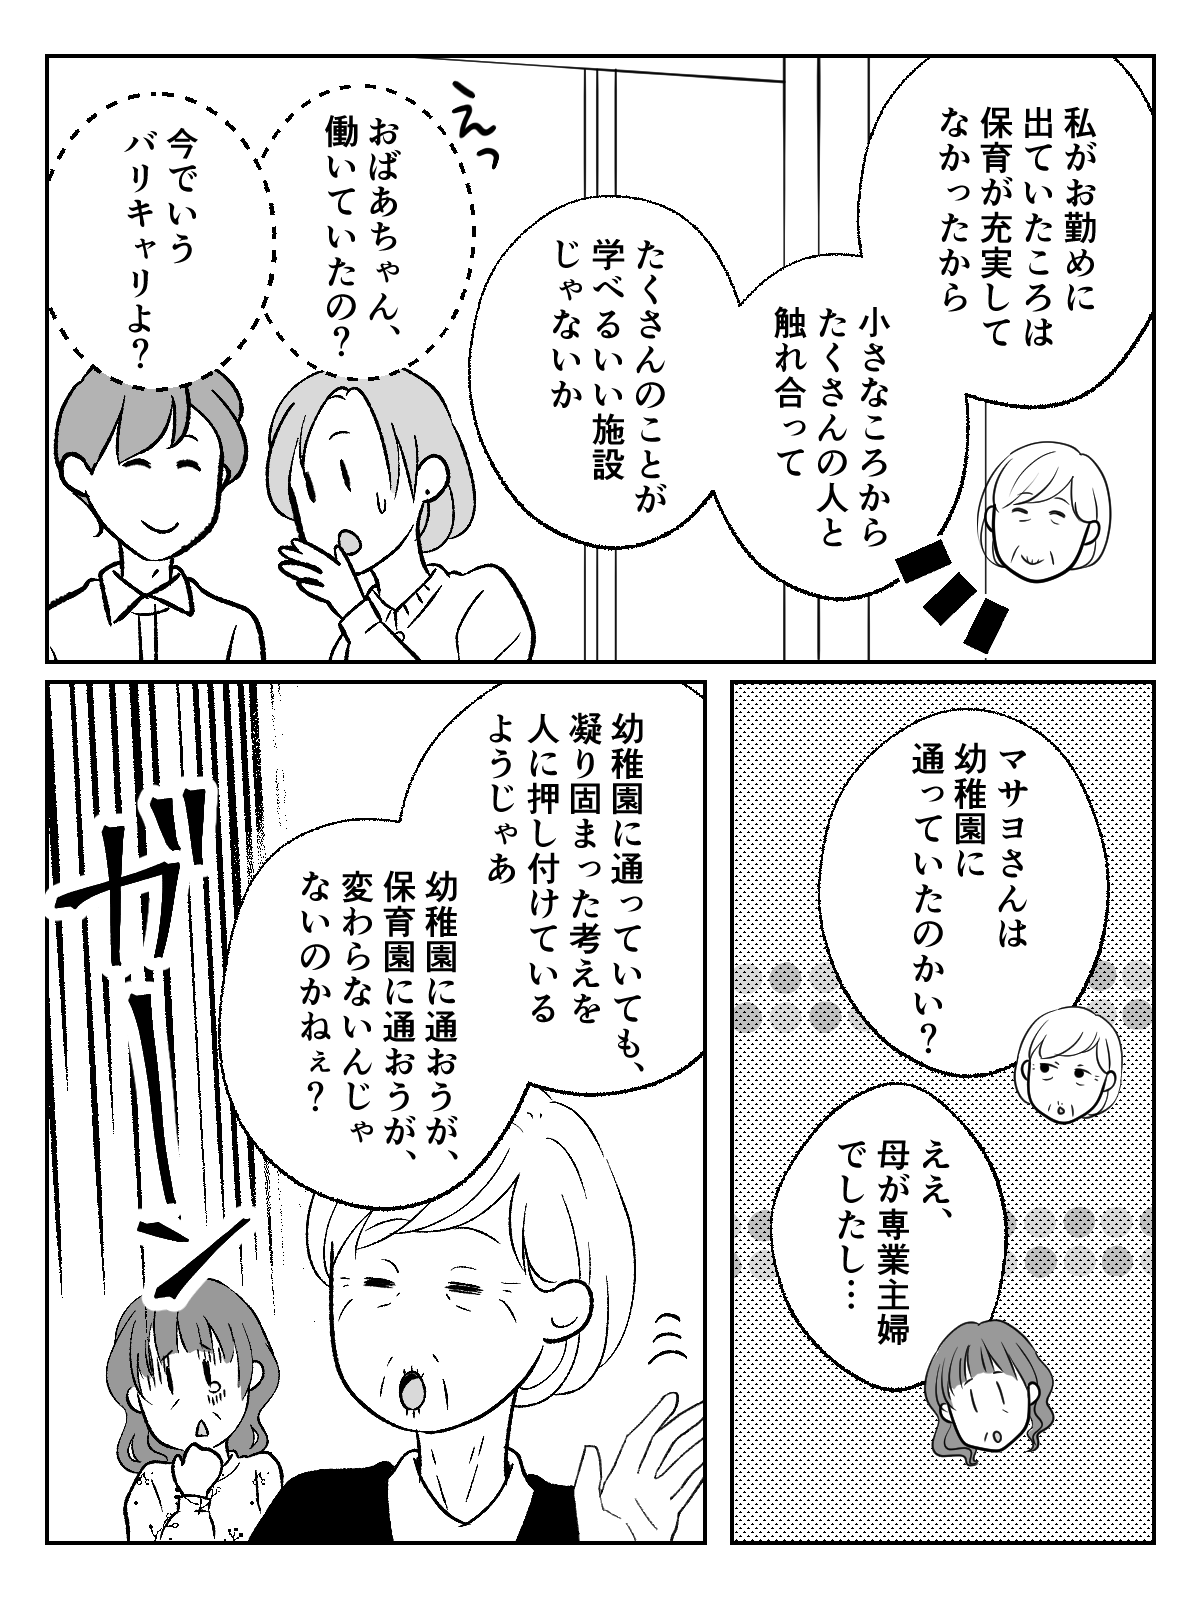 コミック004_003 (2)